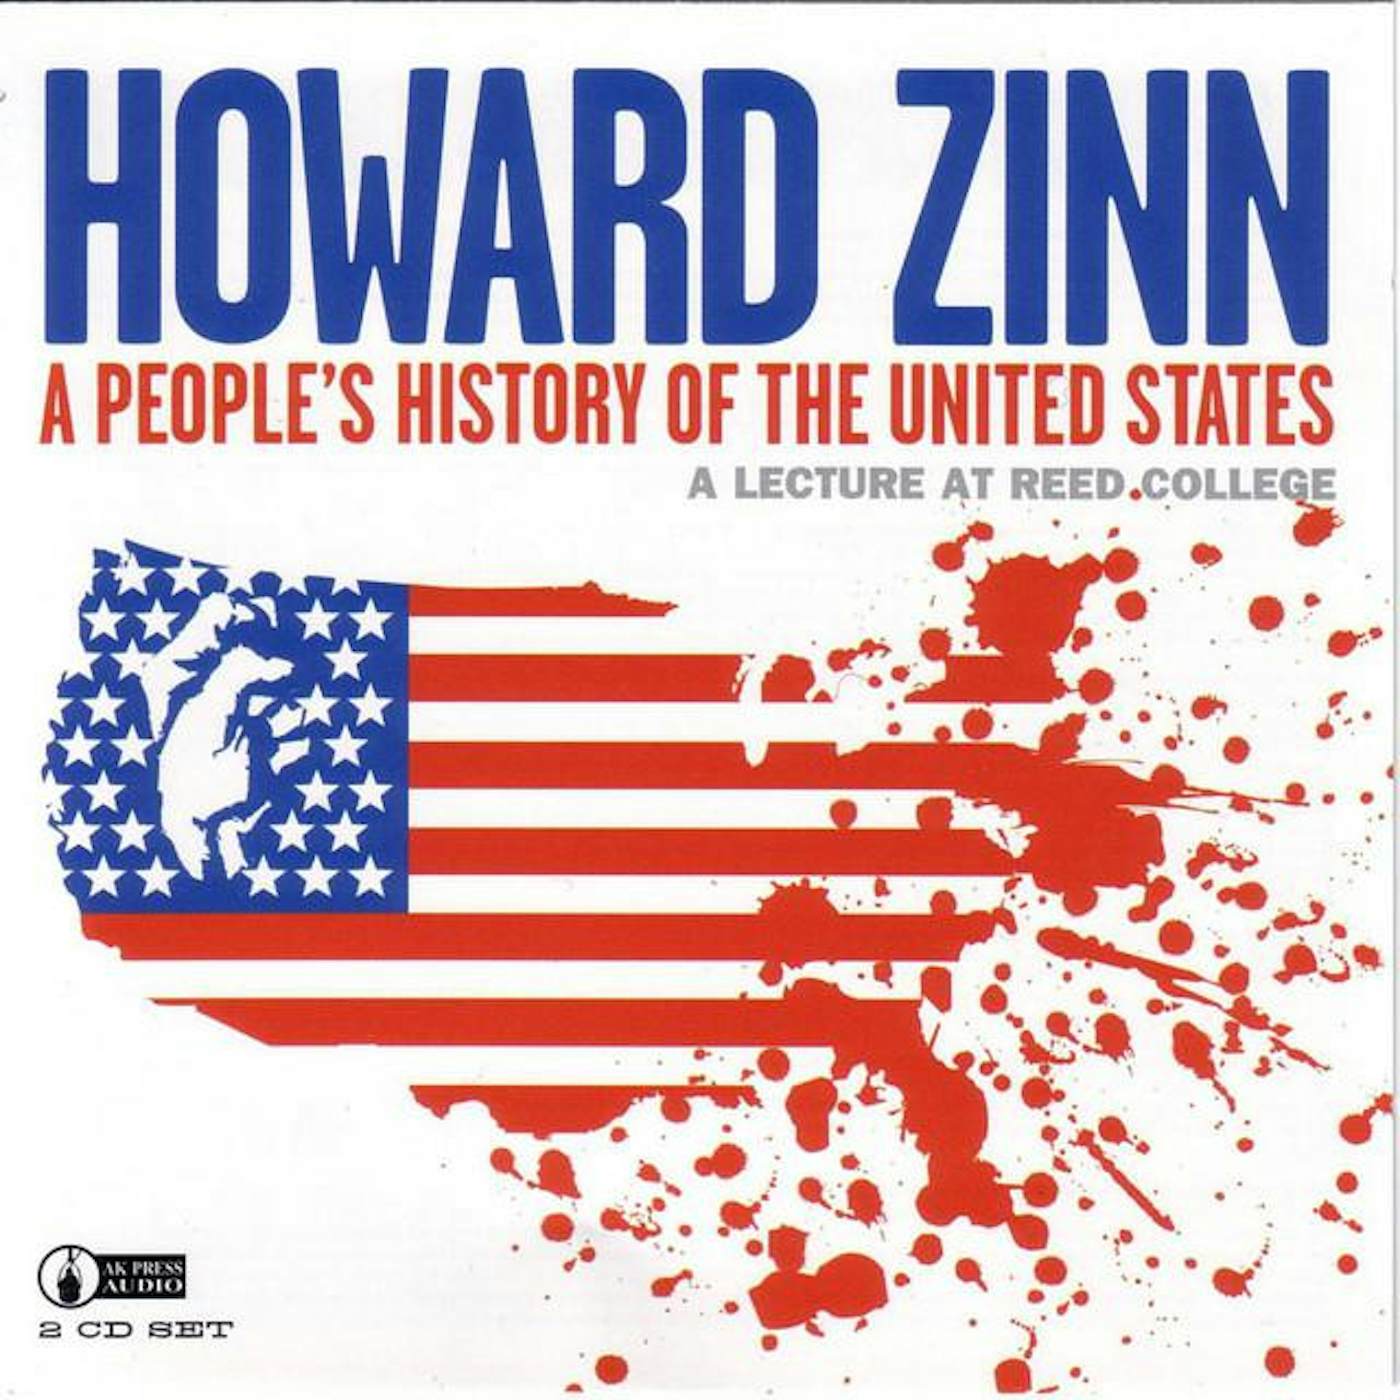 Howard Zinn